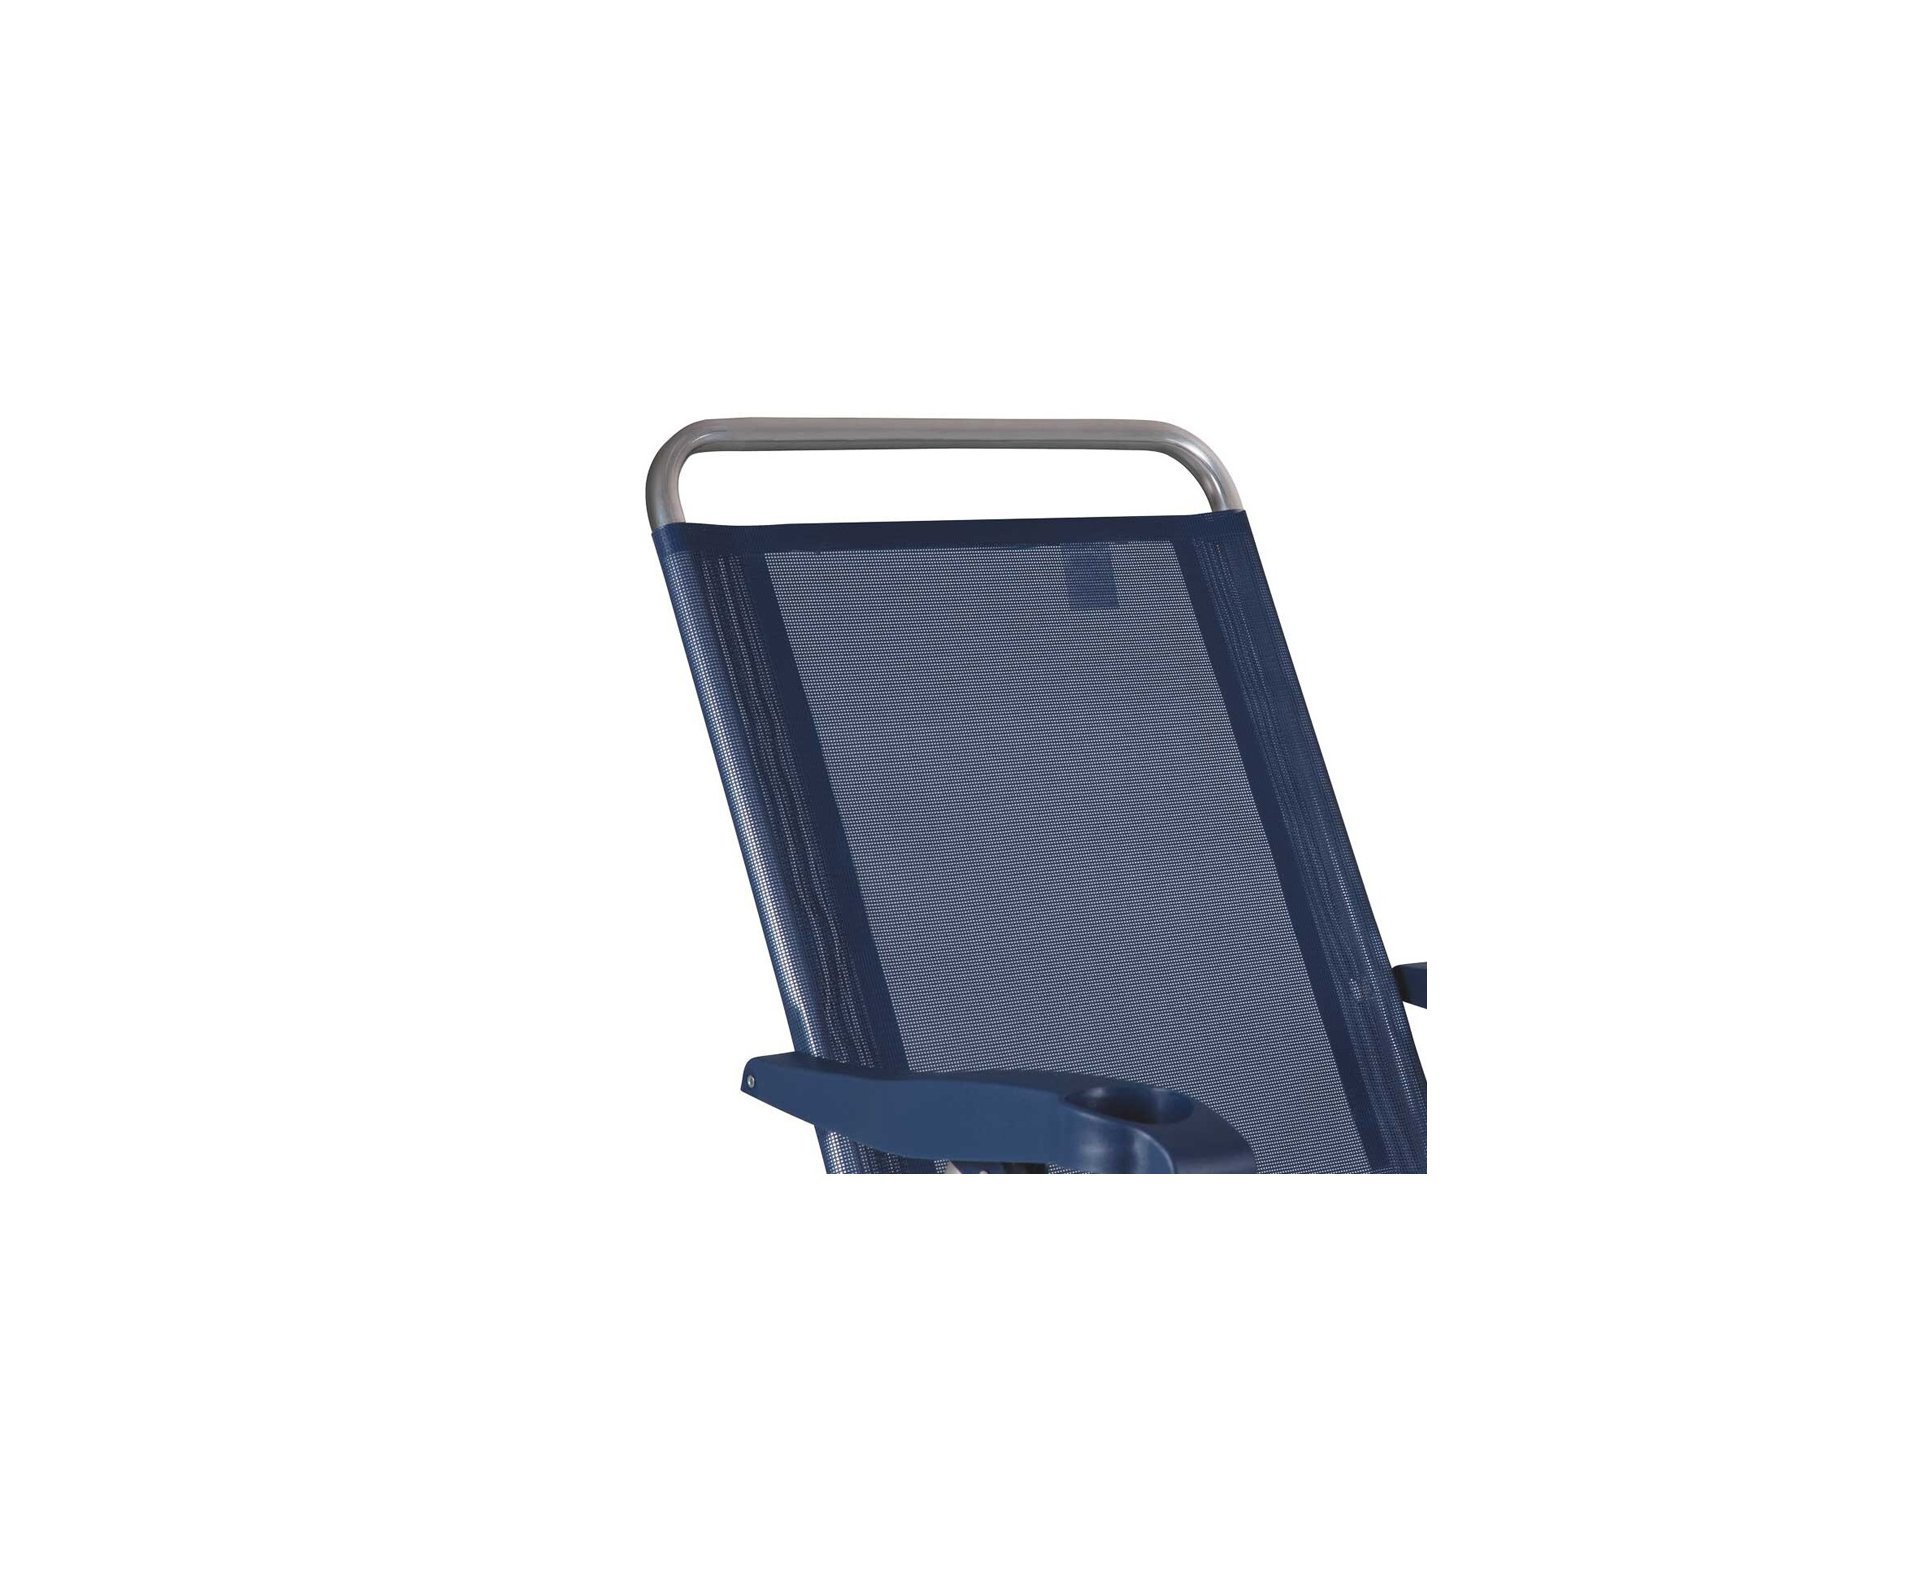 Cadeira Reclinável Mor Boreal de Alumínio, Azul Marinho